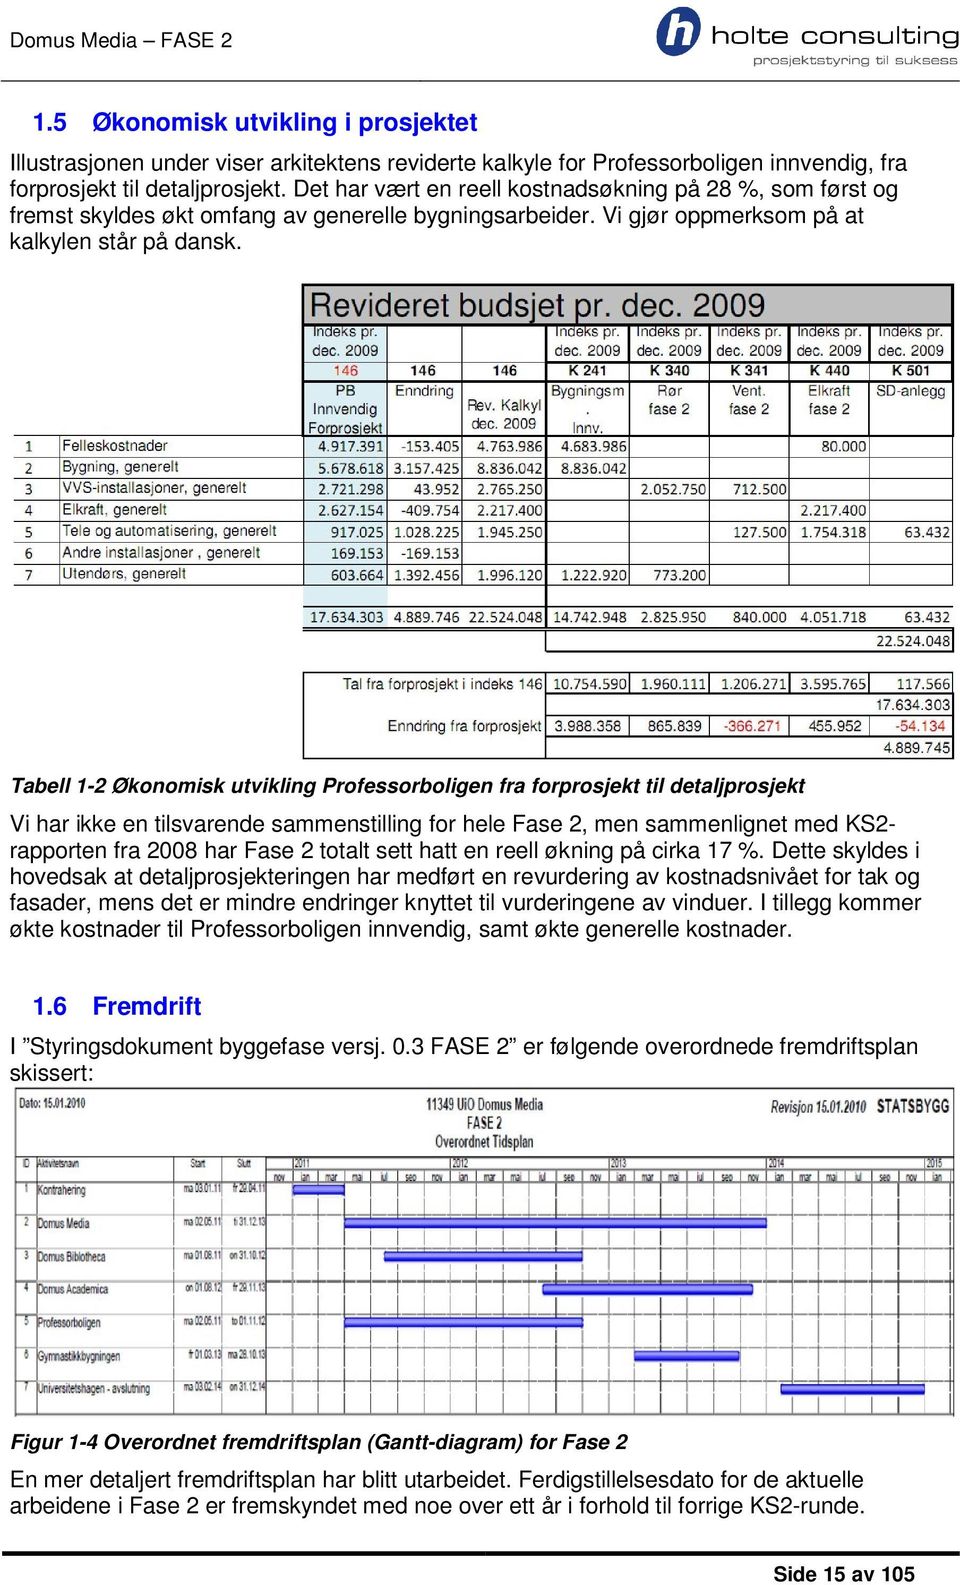 Tabell 1-2 Økonomisk utvikling Professorboligen fra forprosjekt til detaljprosjekt Vi har ikke en tilsvarende sammenstilling for hele Fase 2, men sammenlignet med KS2- rapporten fra 2008 har Fase 2